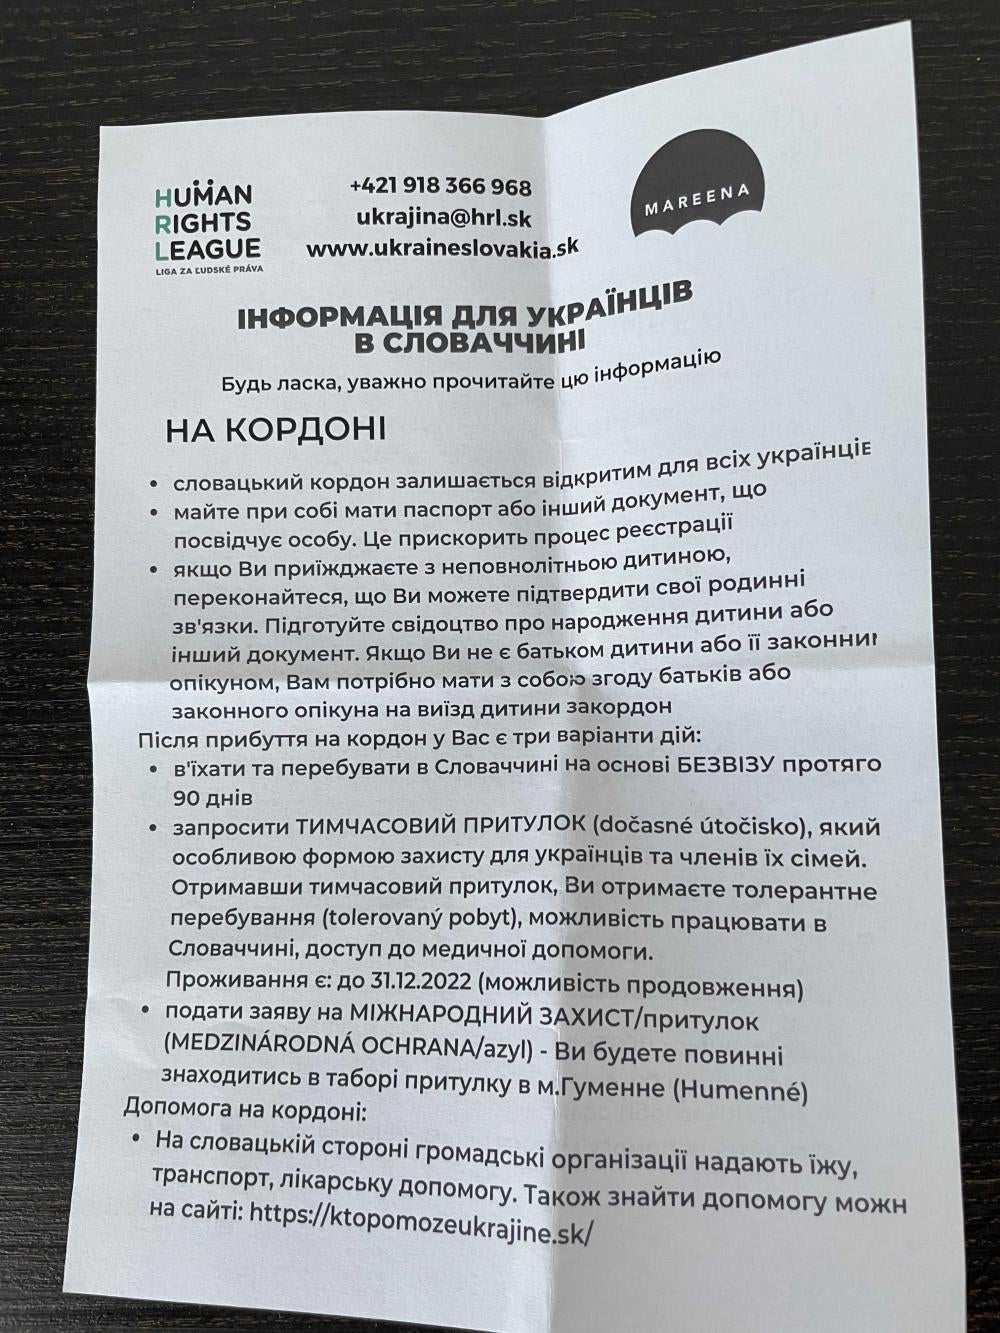 An informational leaflet in Ukrainian